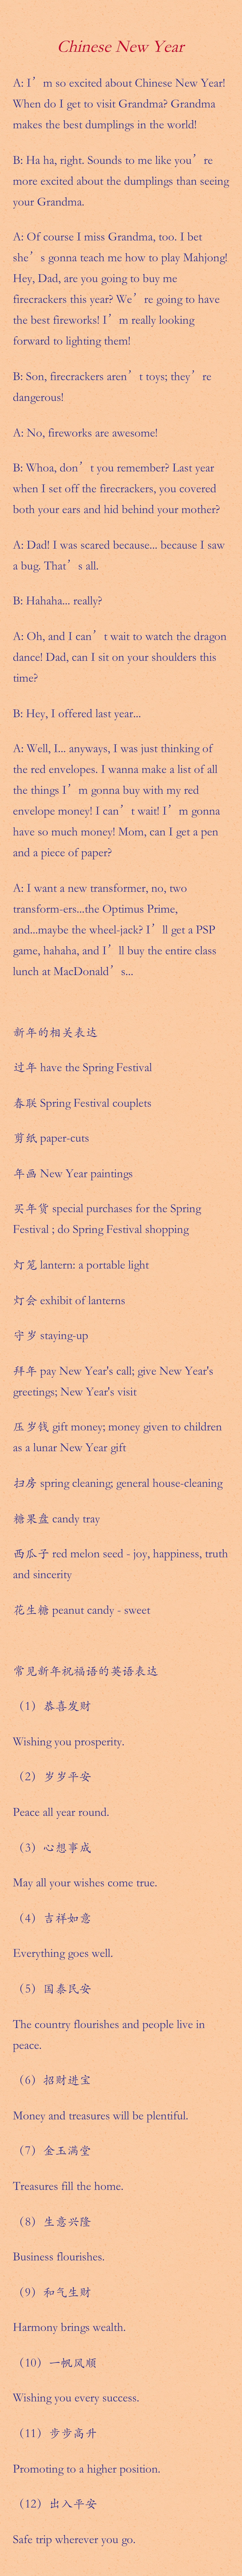 Chinese new year.jpg